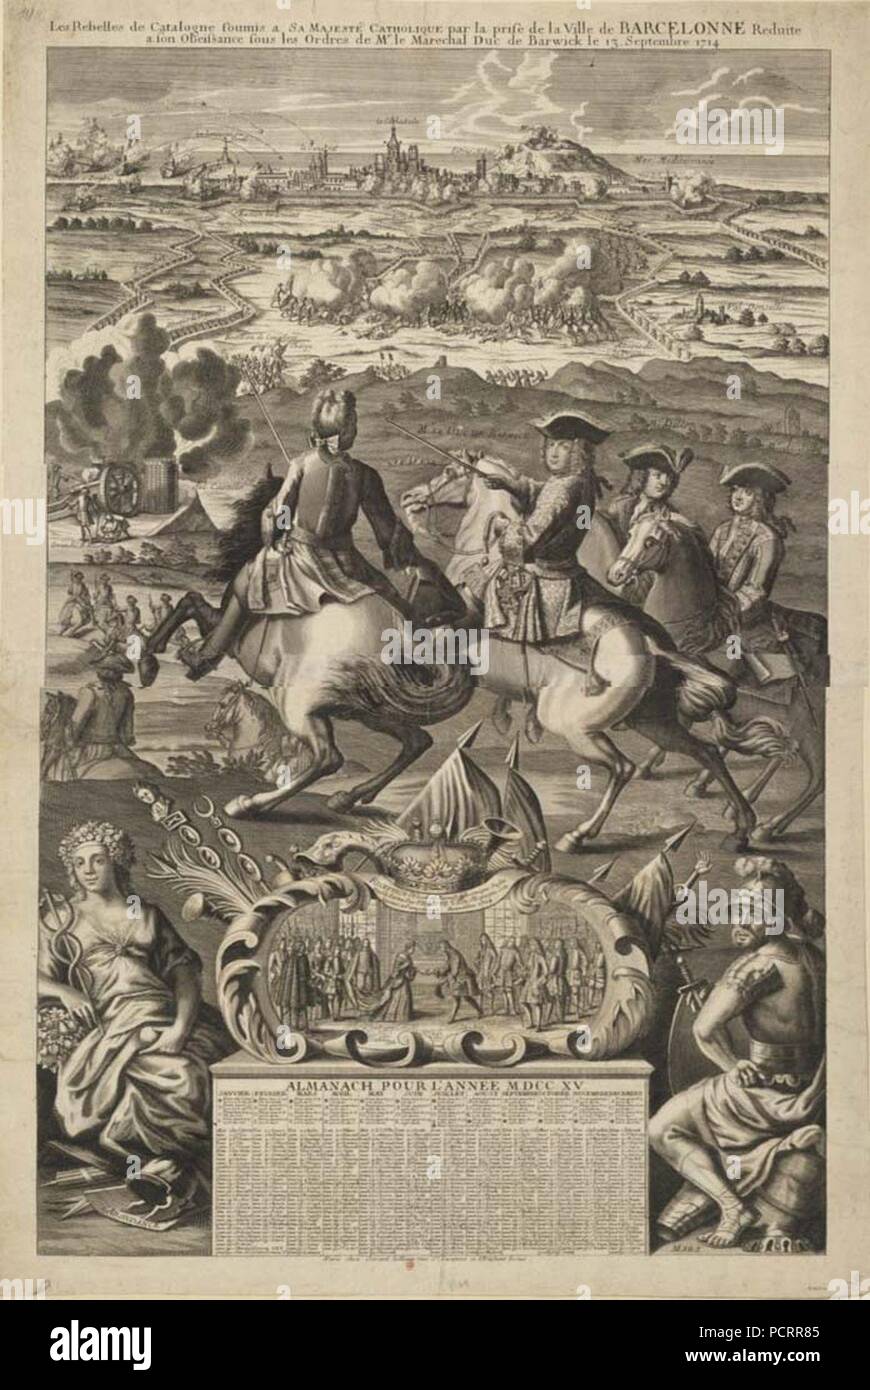 Almanach pour 1715 la prise de Barcelone par le duc de Berwick le 13 septembre 1714. Stock Photo